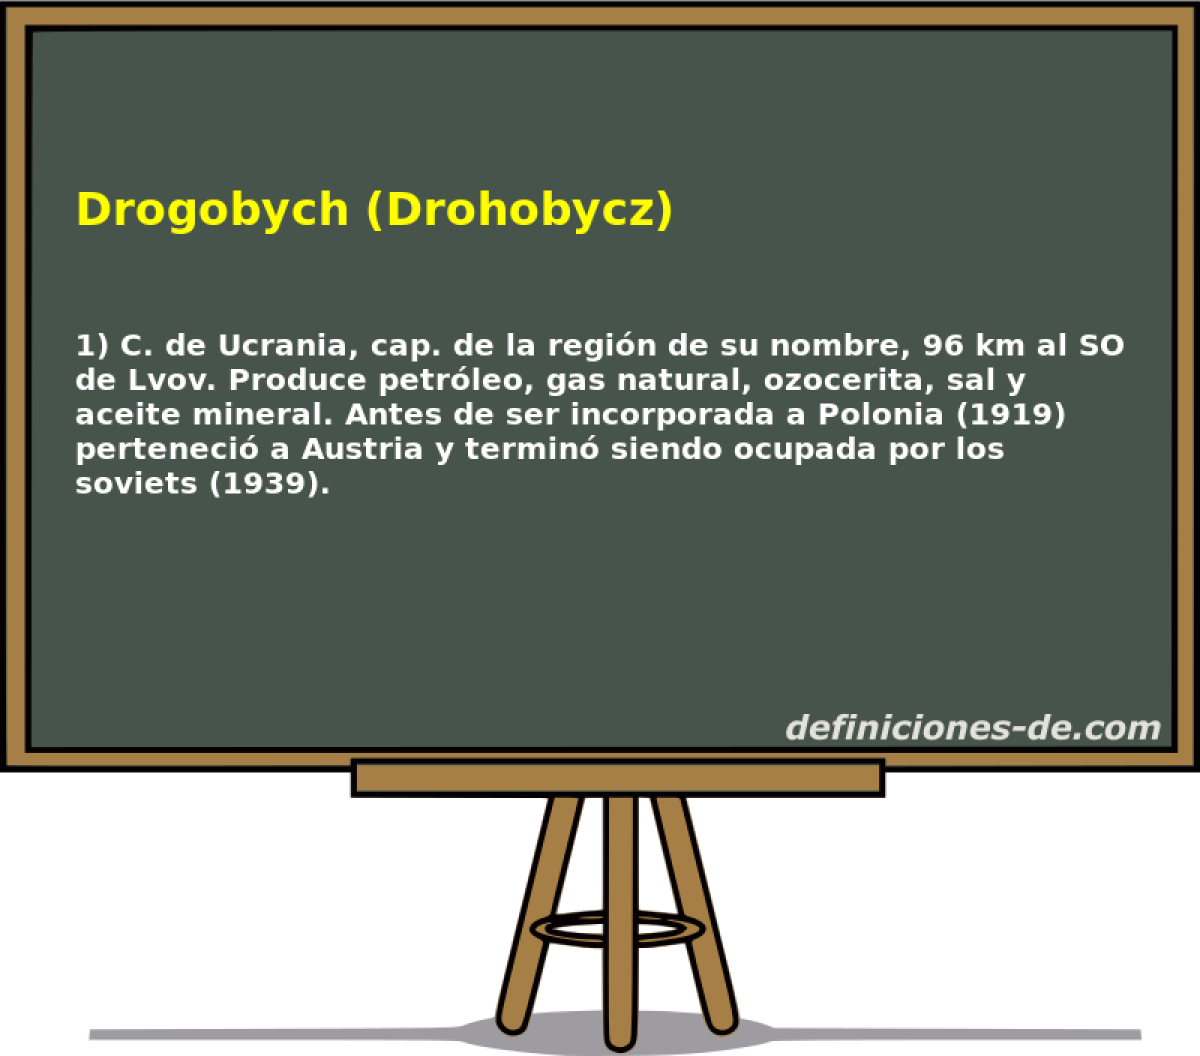 Drogobych (Drohobycz) 